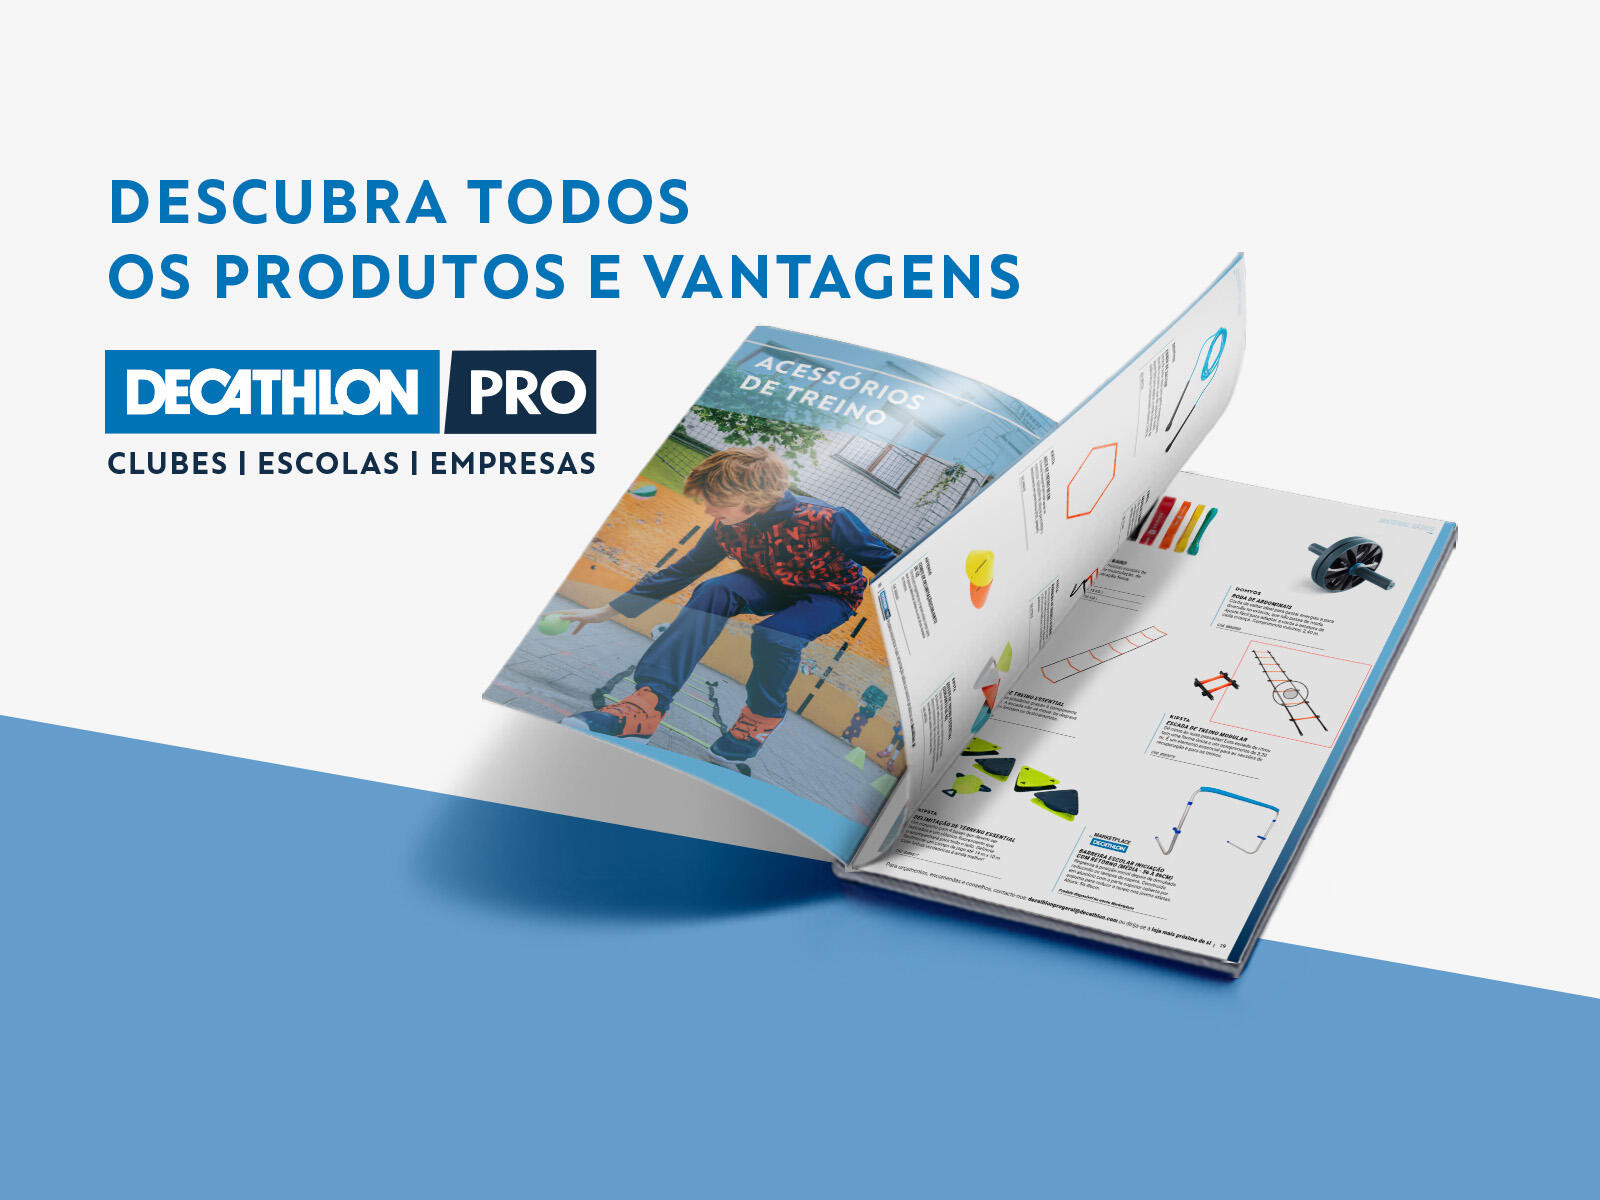 Decathlon Portugal - Matosinhos_Qualidade_2016_Outubro - Página 10-11 -  Created with Publitas.com